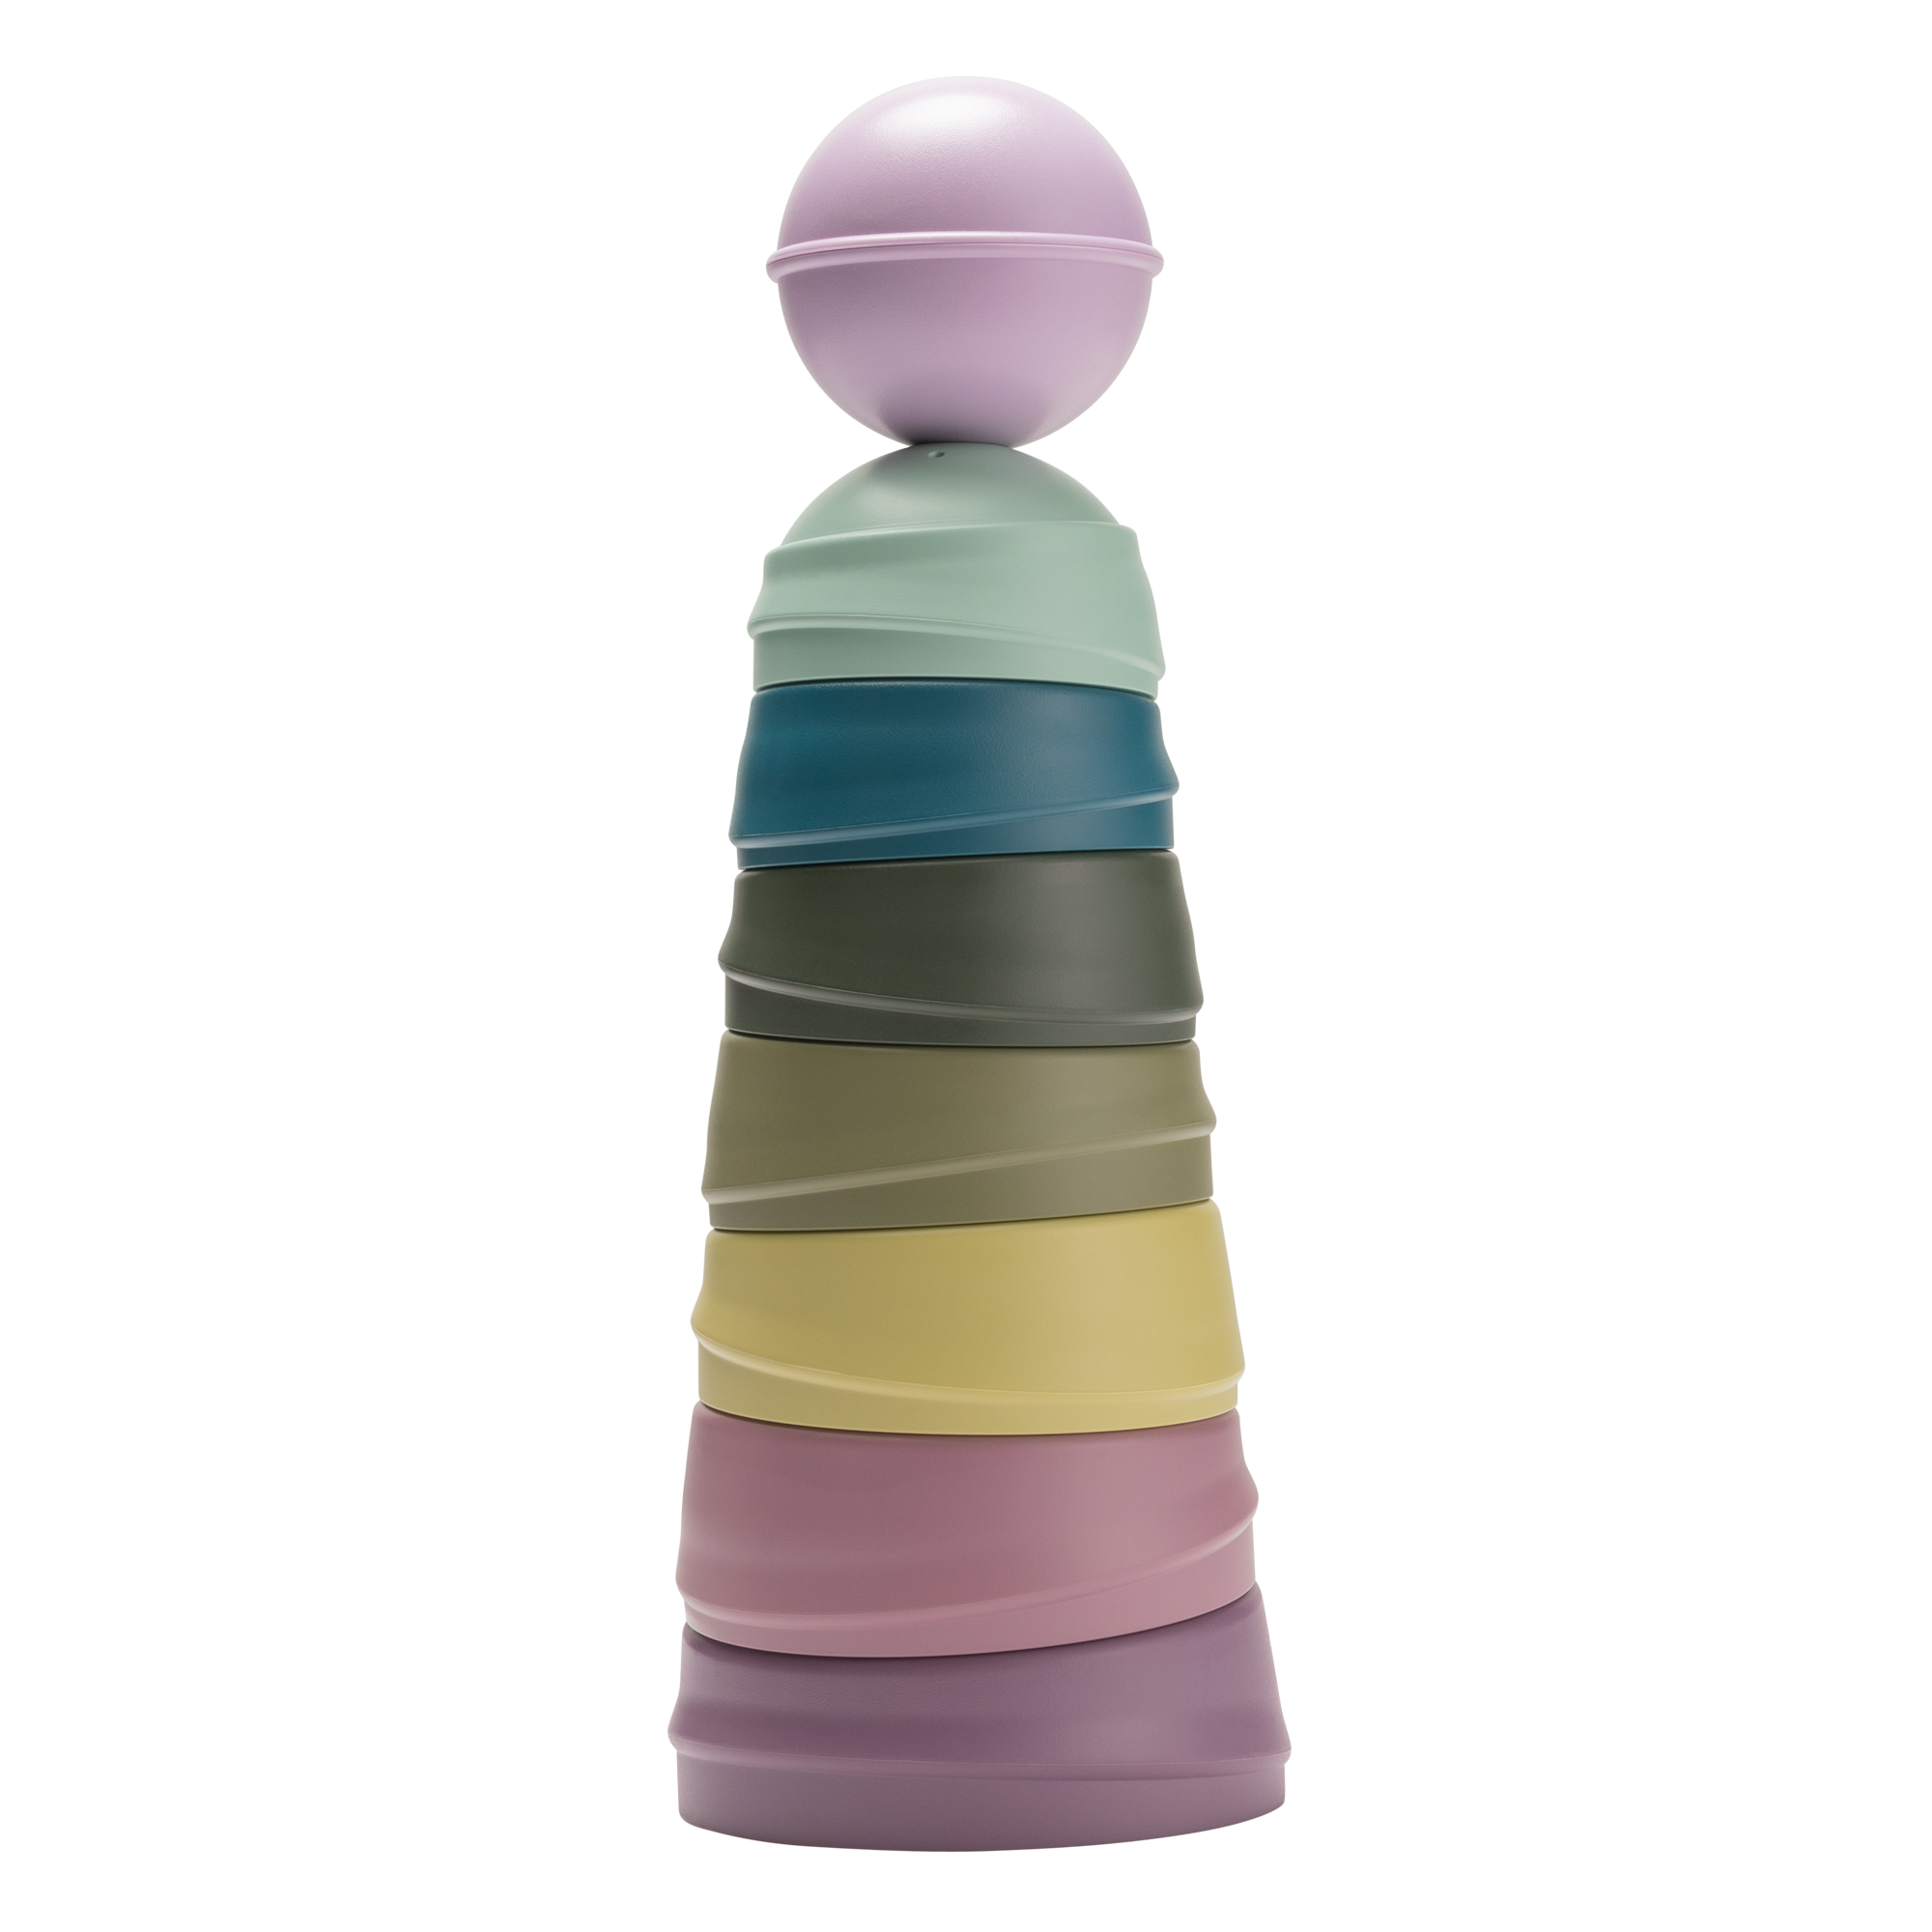 BIBS toronyépítő játék szívárvány színekben a pippadu polcain